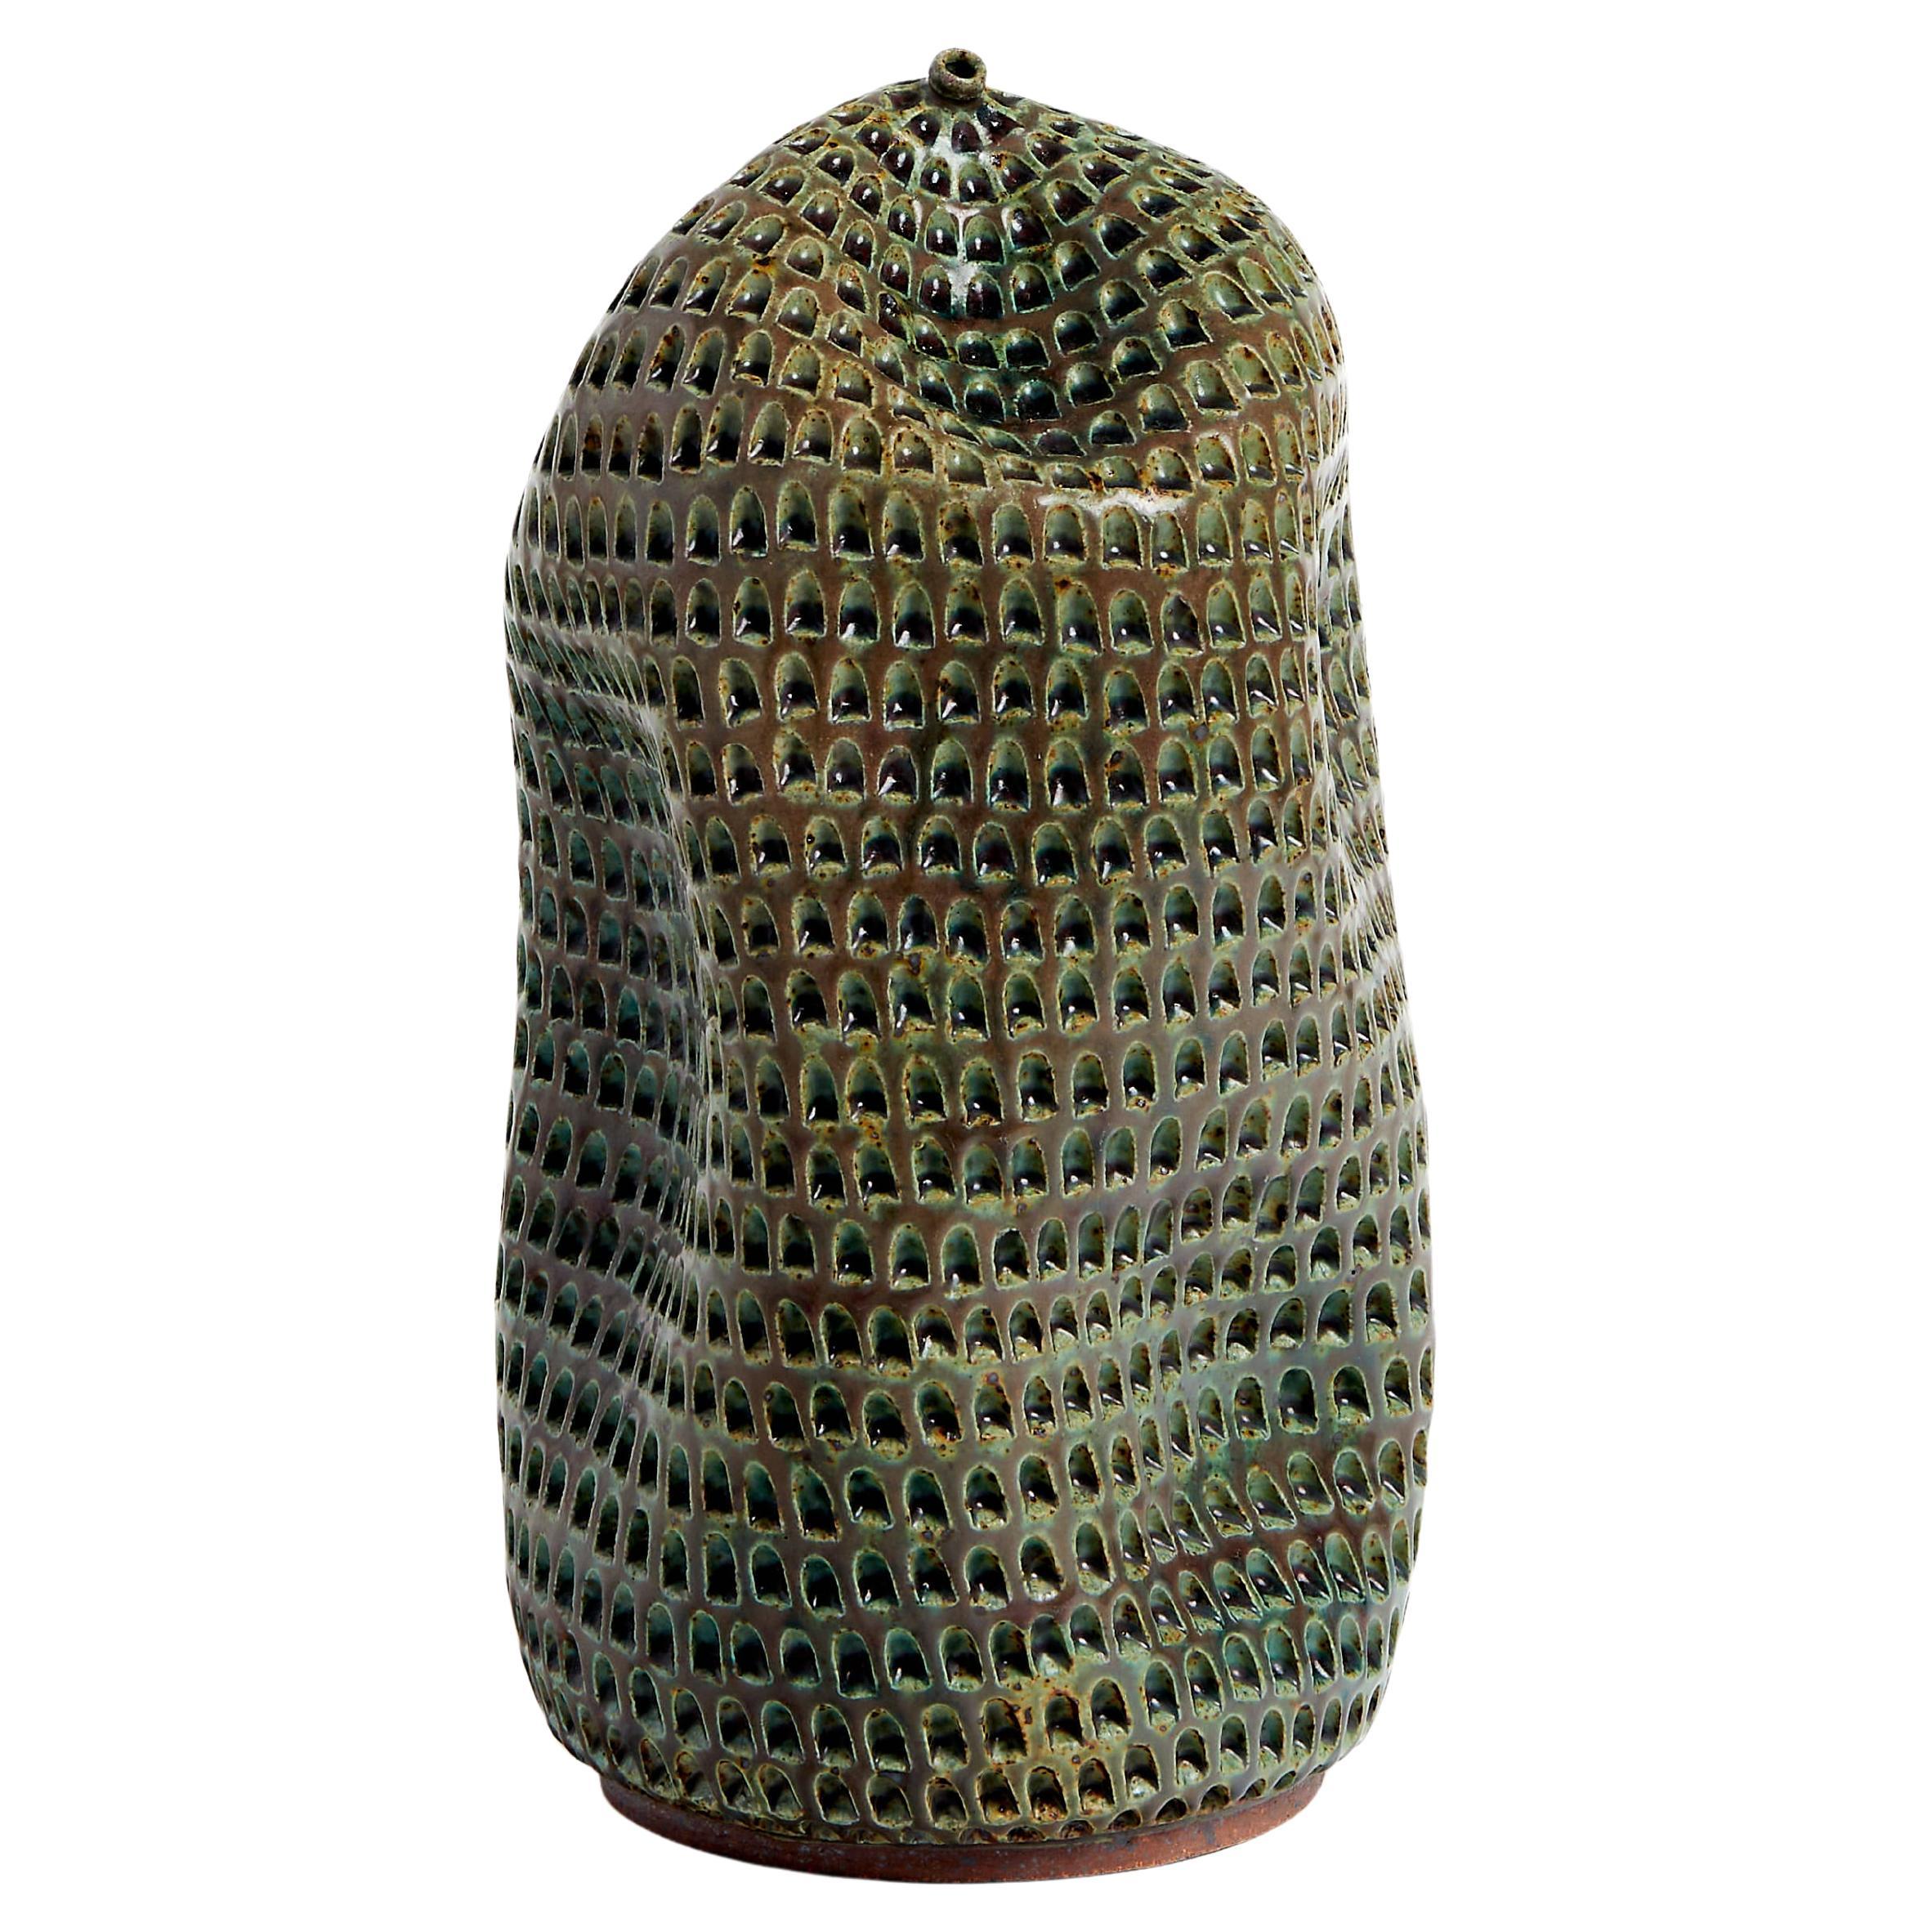 Vase en céramique SKOBY JOE HAND MADE GREEN BRONZE TEXTURED BOTTLE (fabrication artisanale)